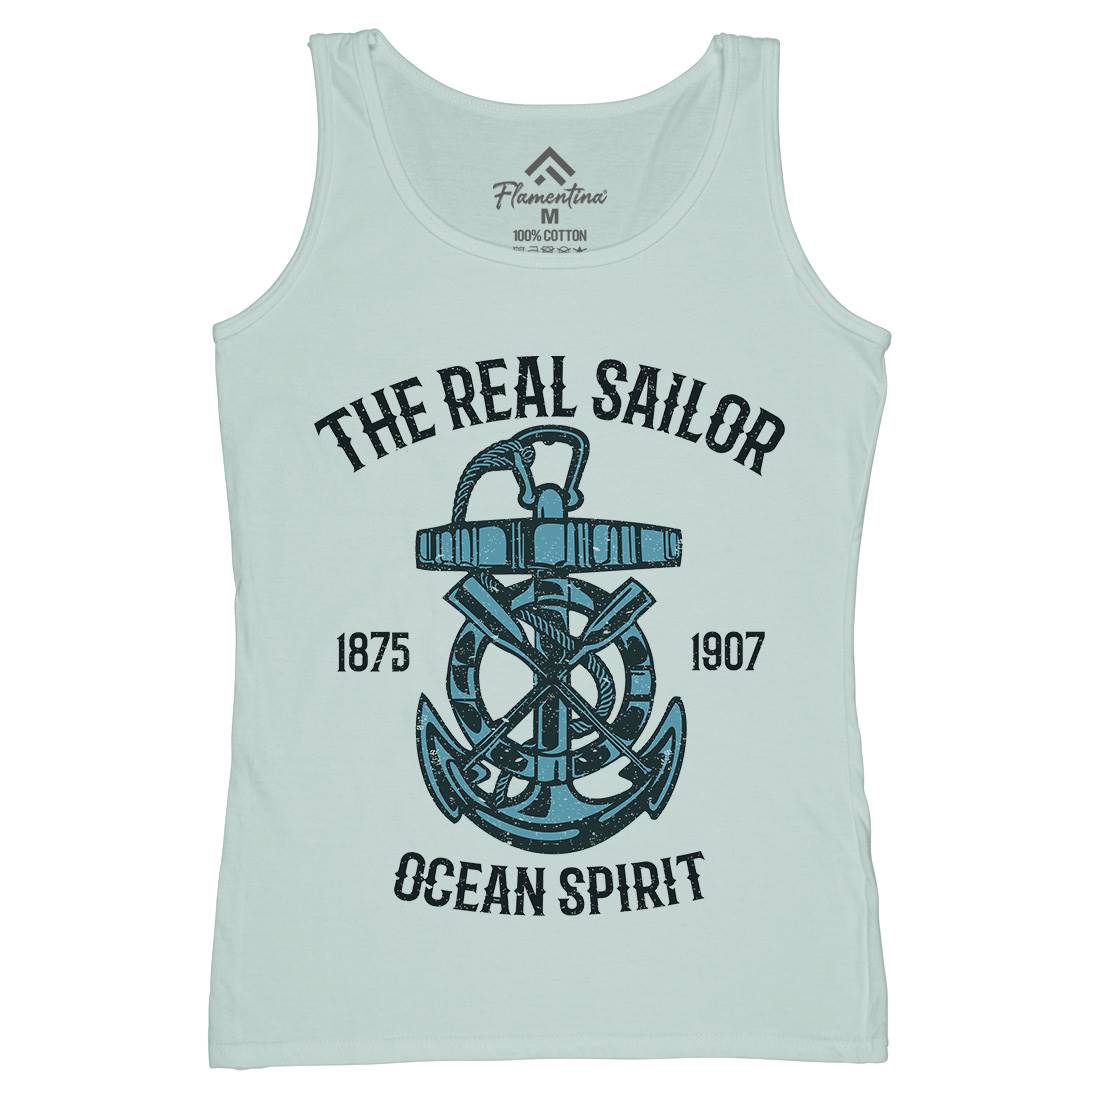 Ocean Spirit Womens Organic Tank Top Vest Navy A097